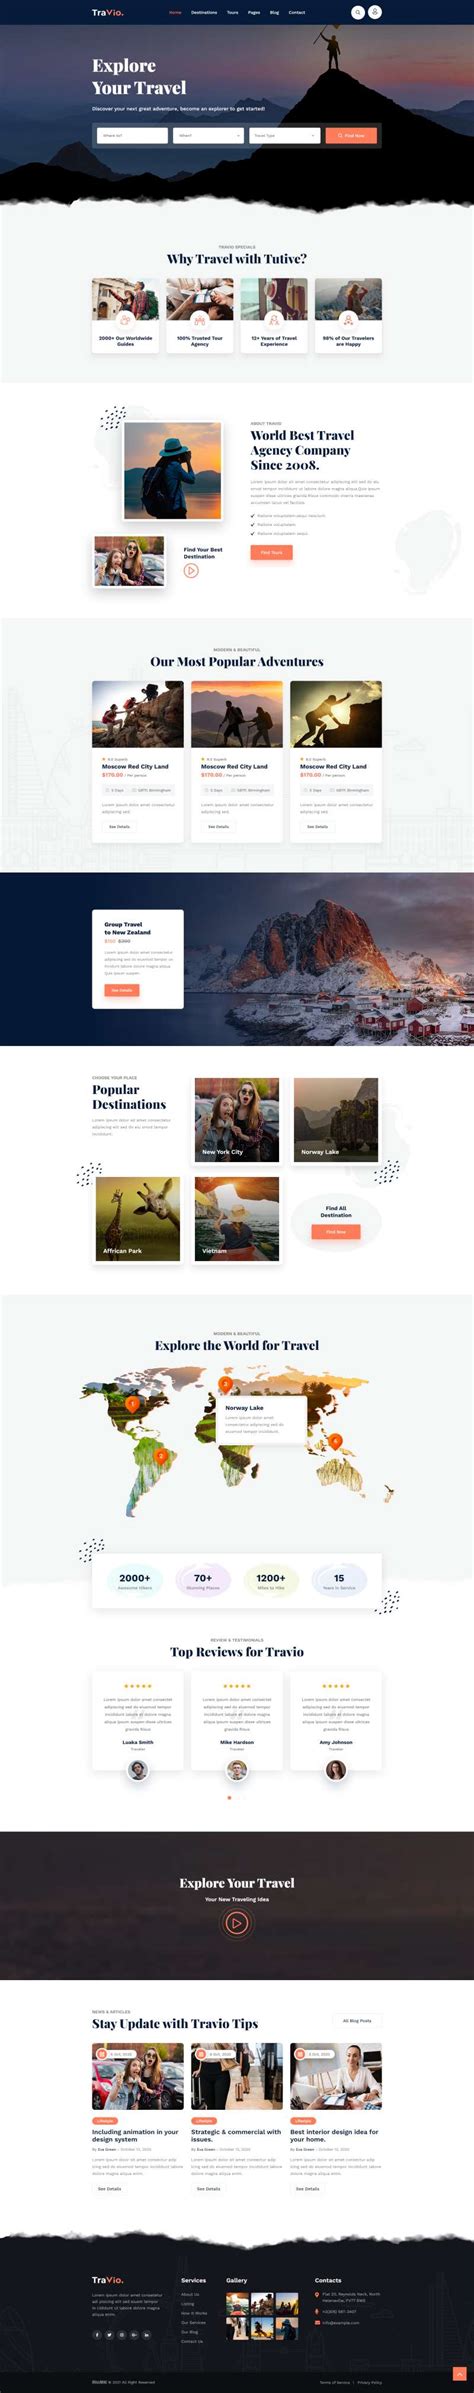 旅行社网页设计模版，高质量的旅游网站的网页设计html代码_墨鱼部落格